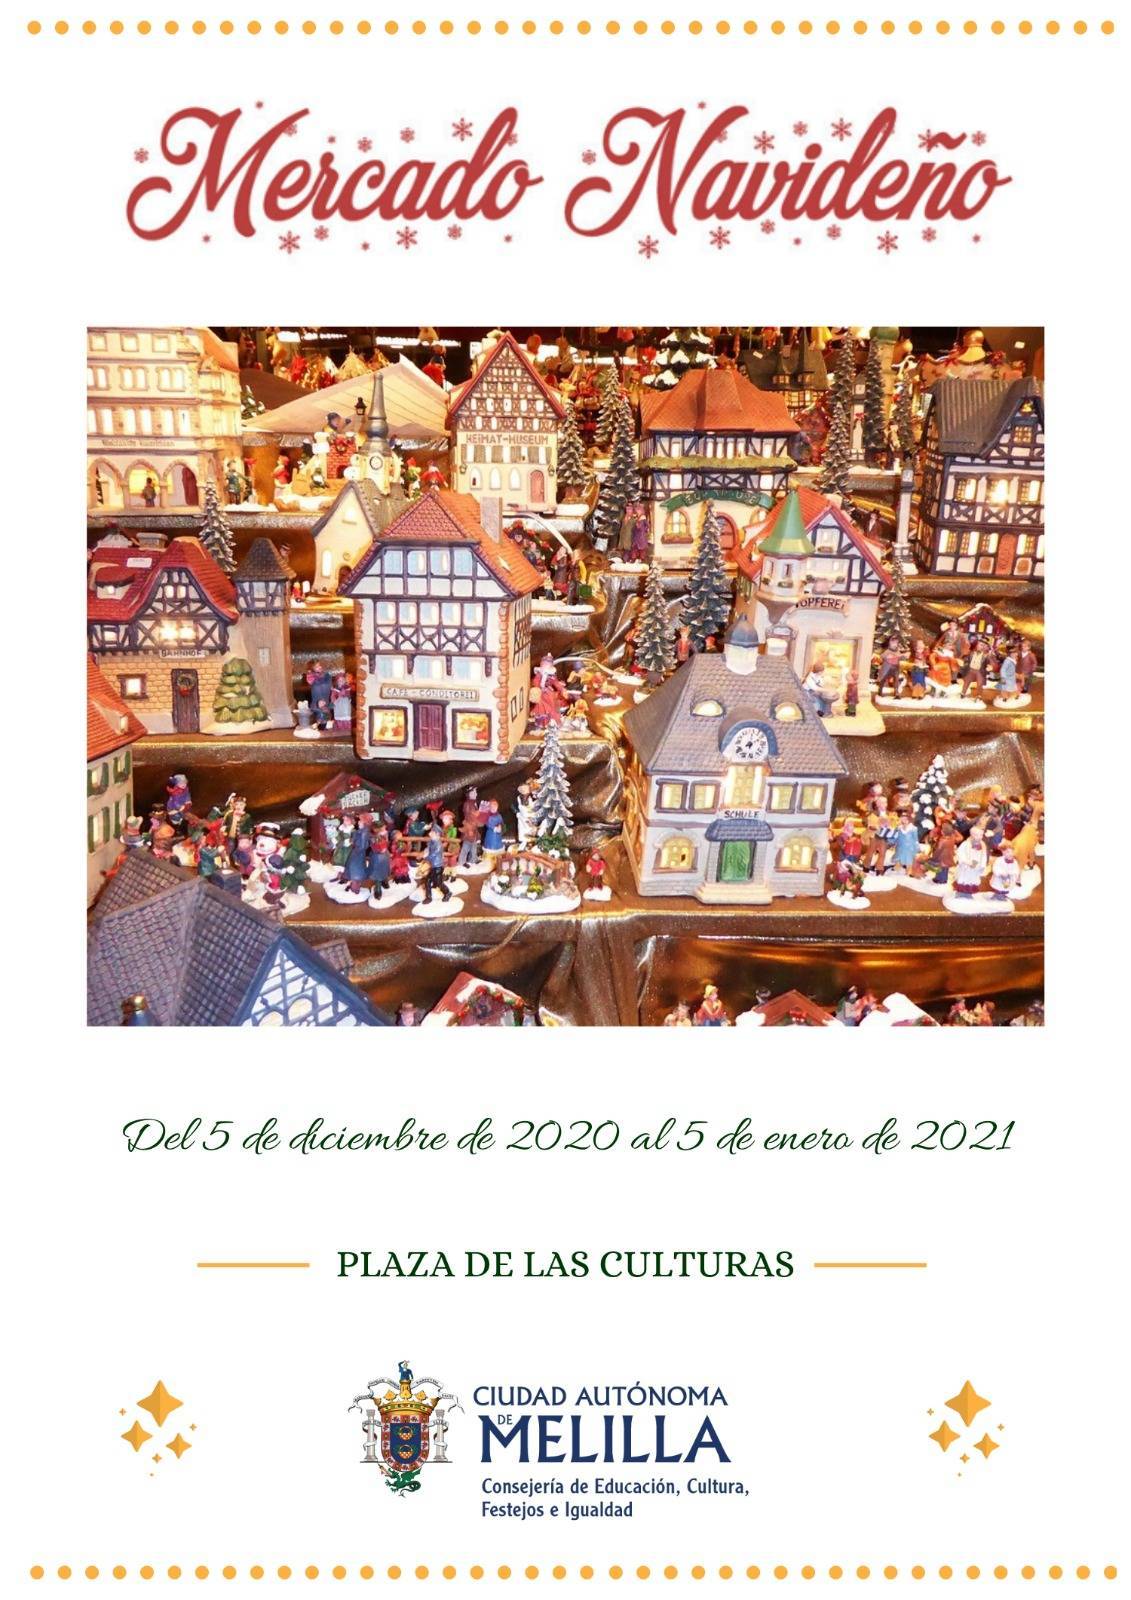 Mercado navideño (2020-2021) - Melilla